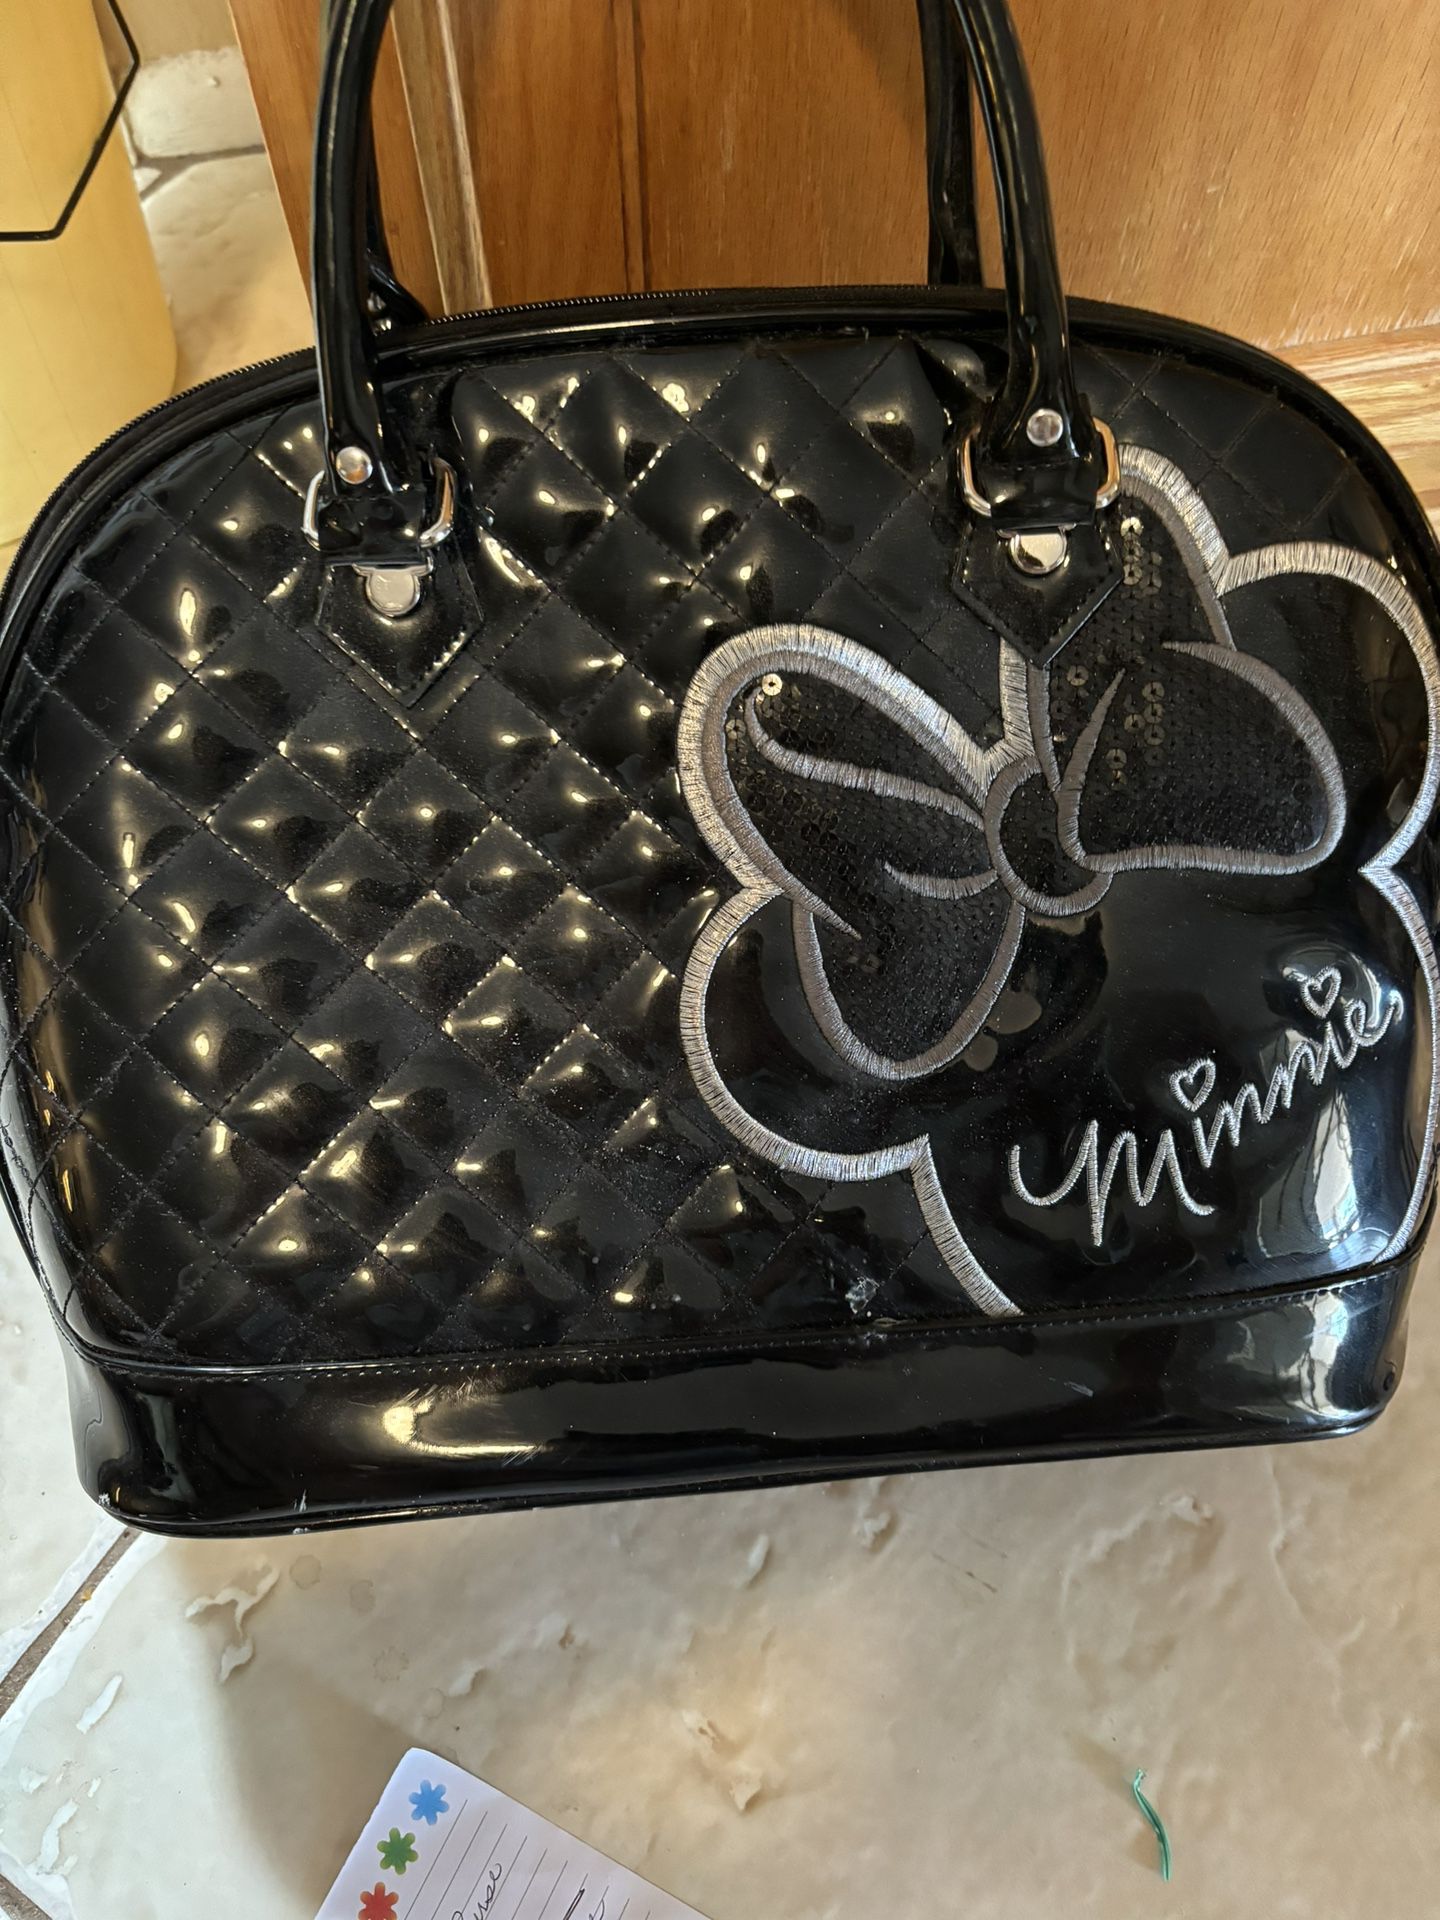 Minnie purse - Black